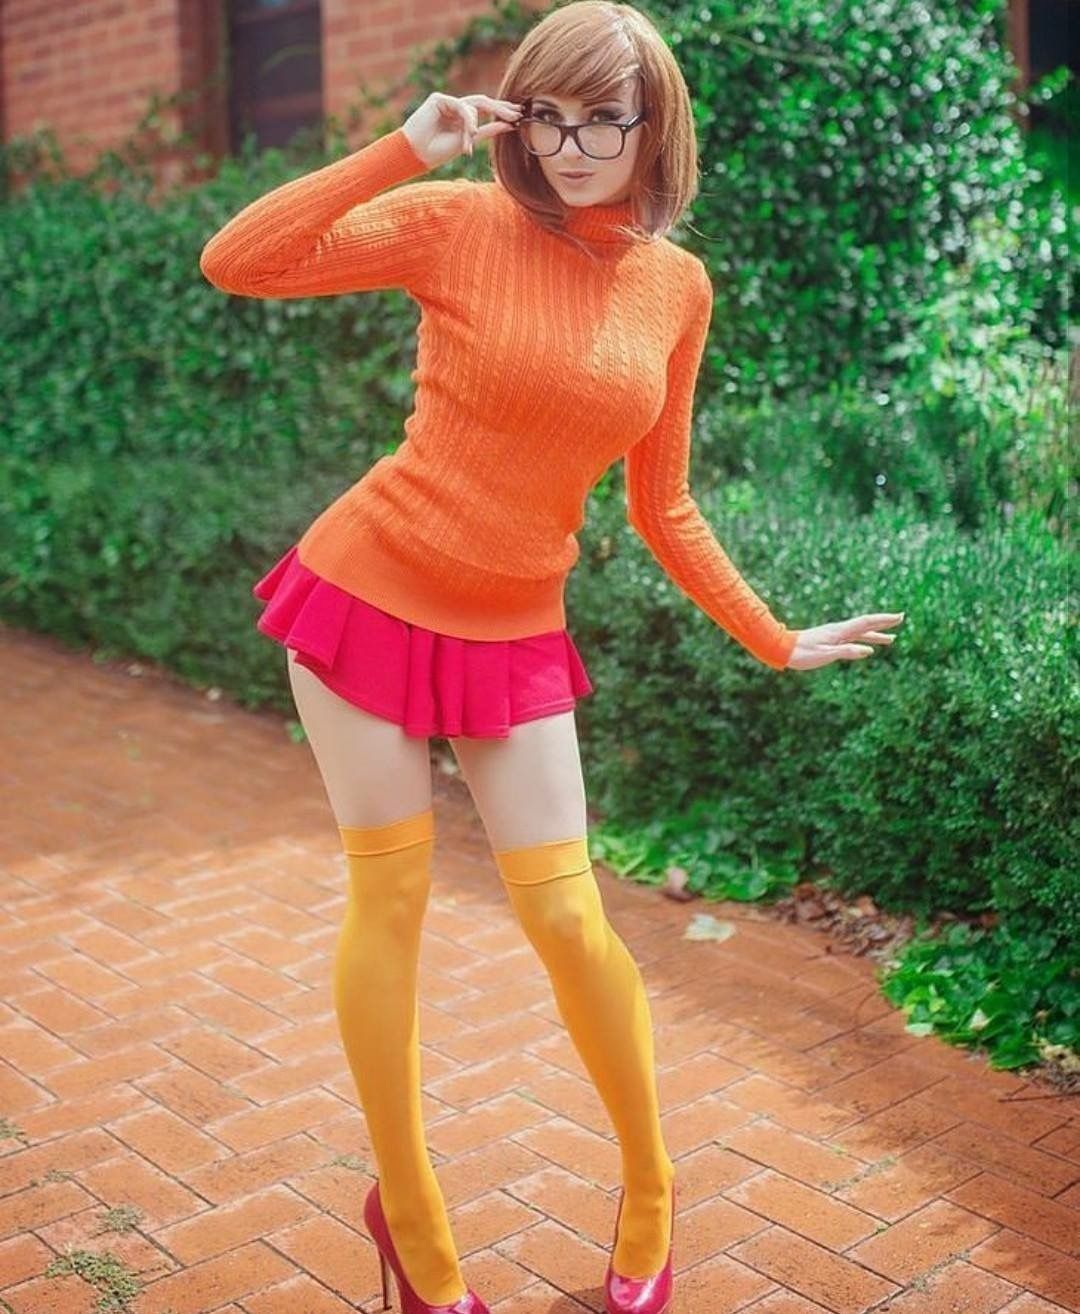 Sexy Velma From Scooby Doo photo 17